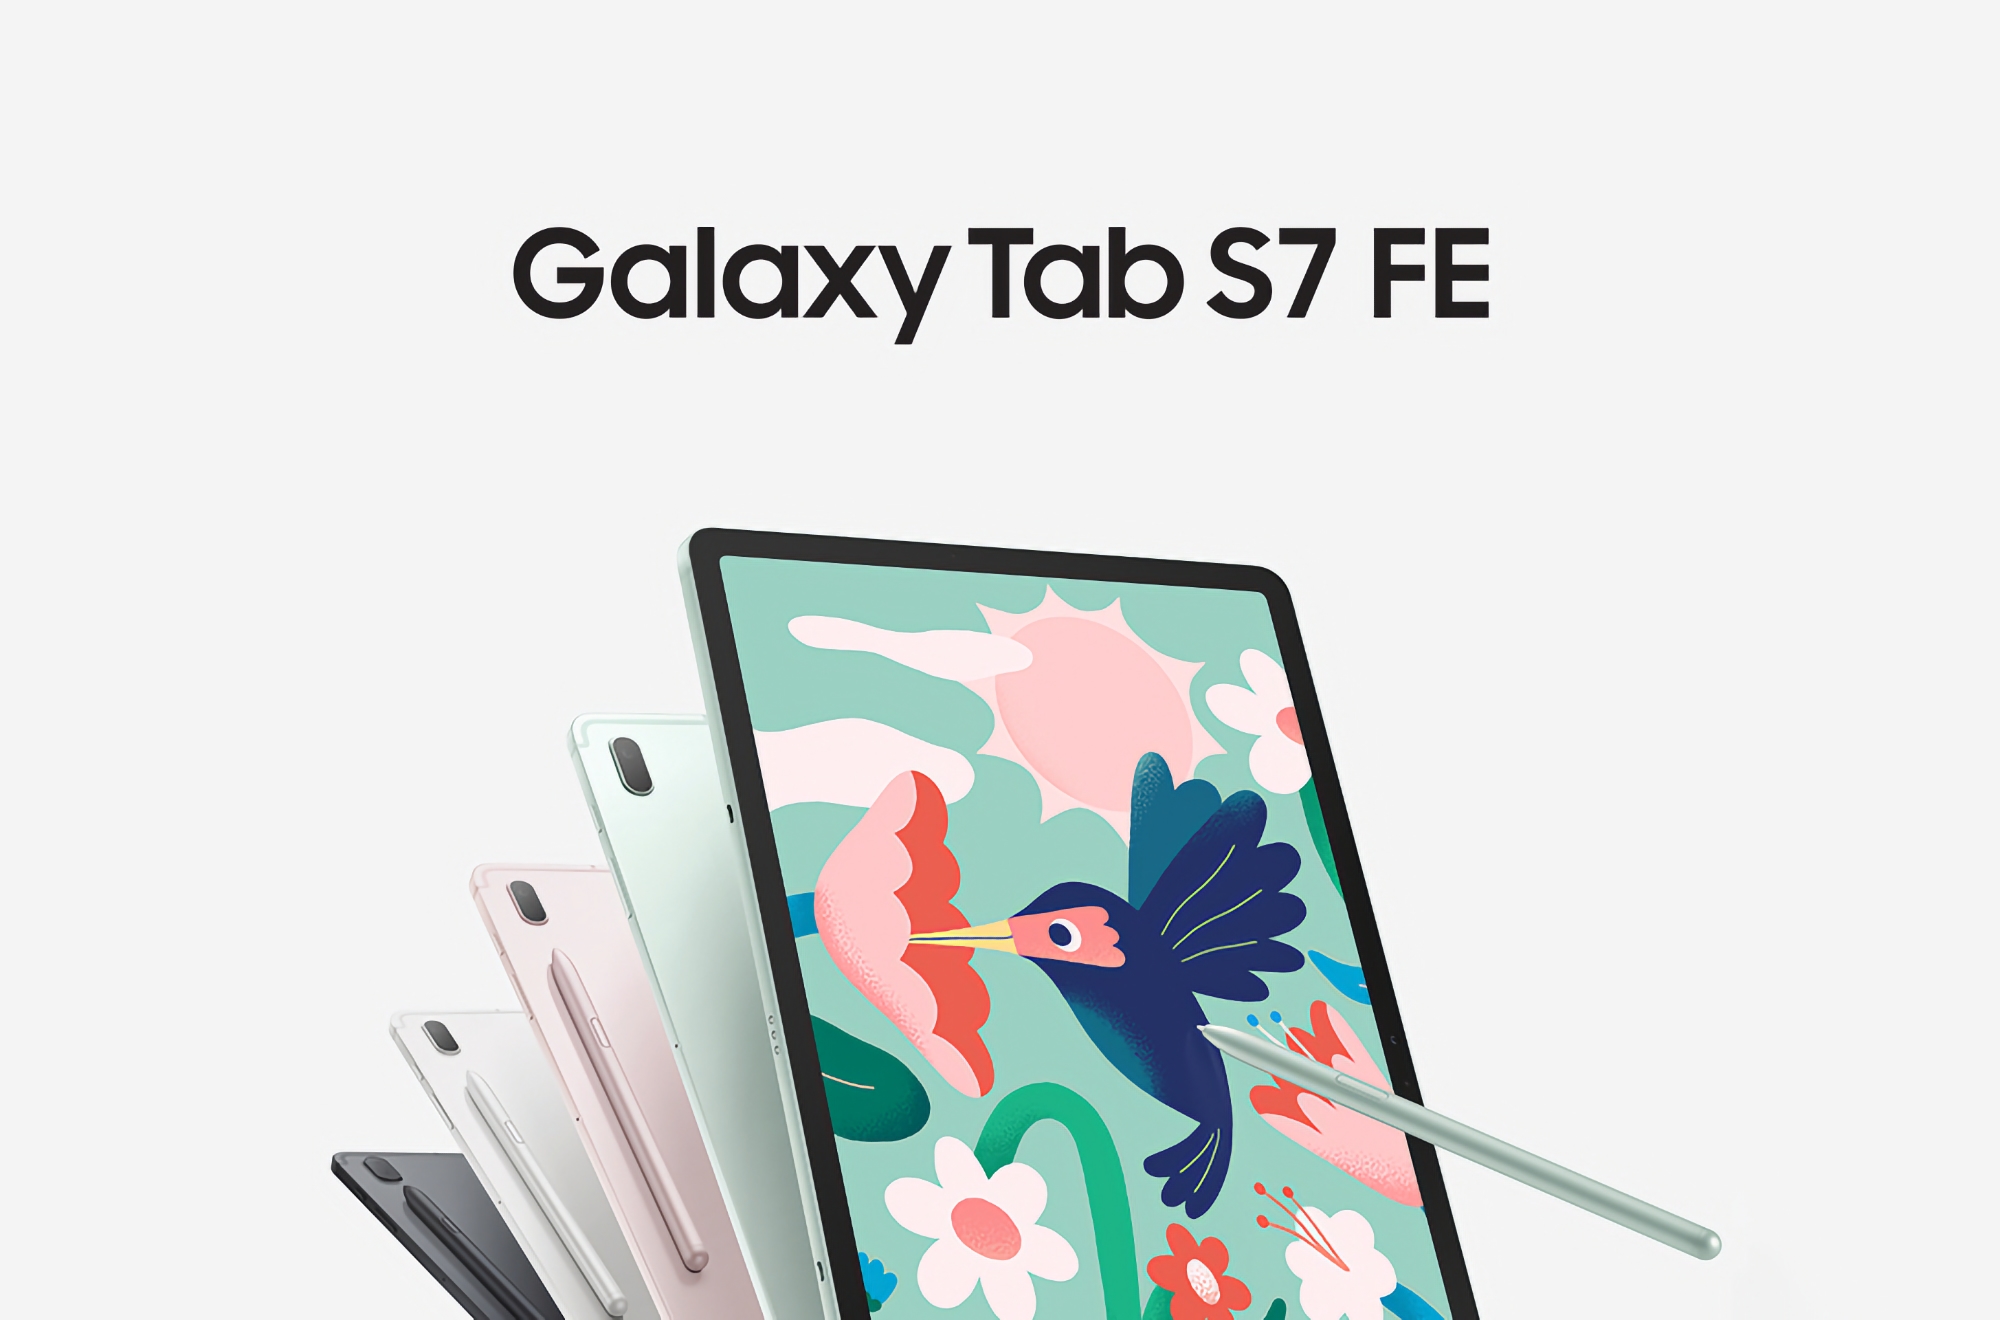 Oferta del día: Samsung Galaxy Tab S7 FE con pantalla de 12,4″ y chip Snapdragon 750G en Amazon con 220 dólares de descuento